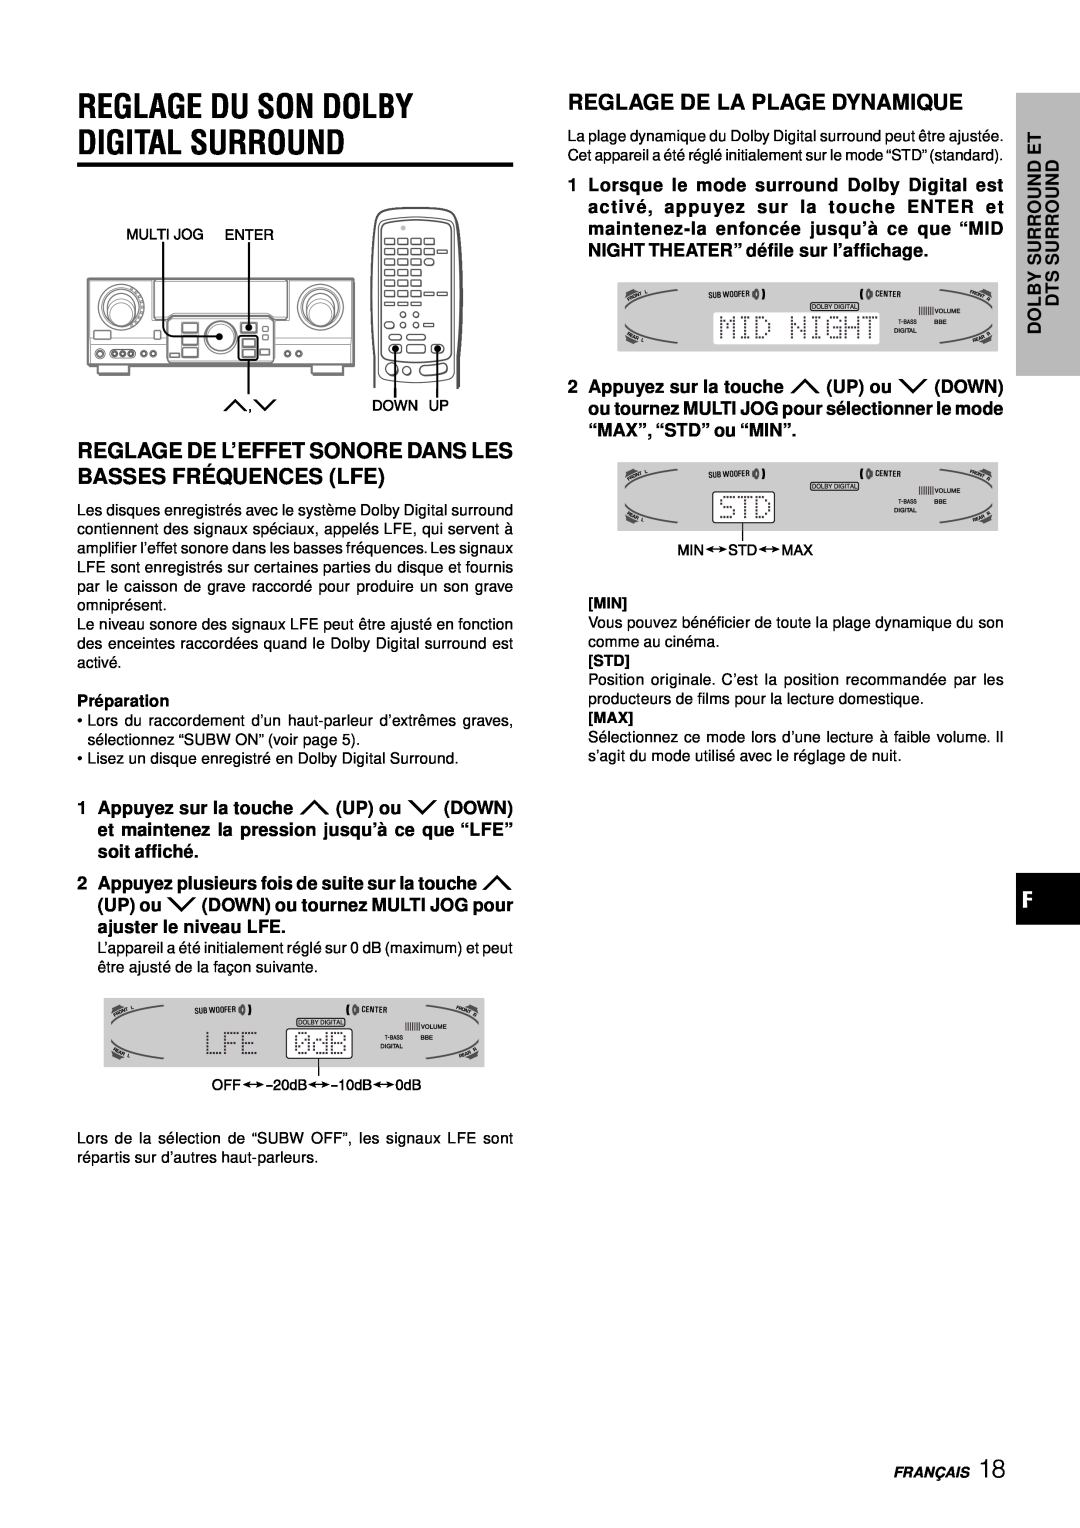 Aiwa AV-D97 manual Reglage De L’Effet Sonore Dans Les Basses Fré Quences Lfe, Reglage De La Plage Dynamique 